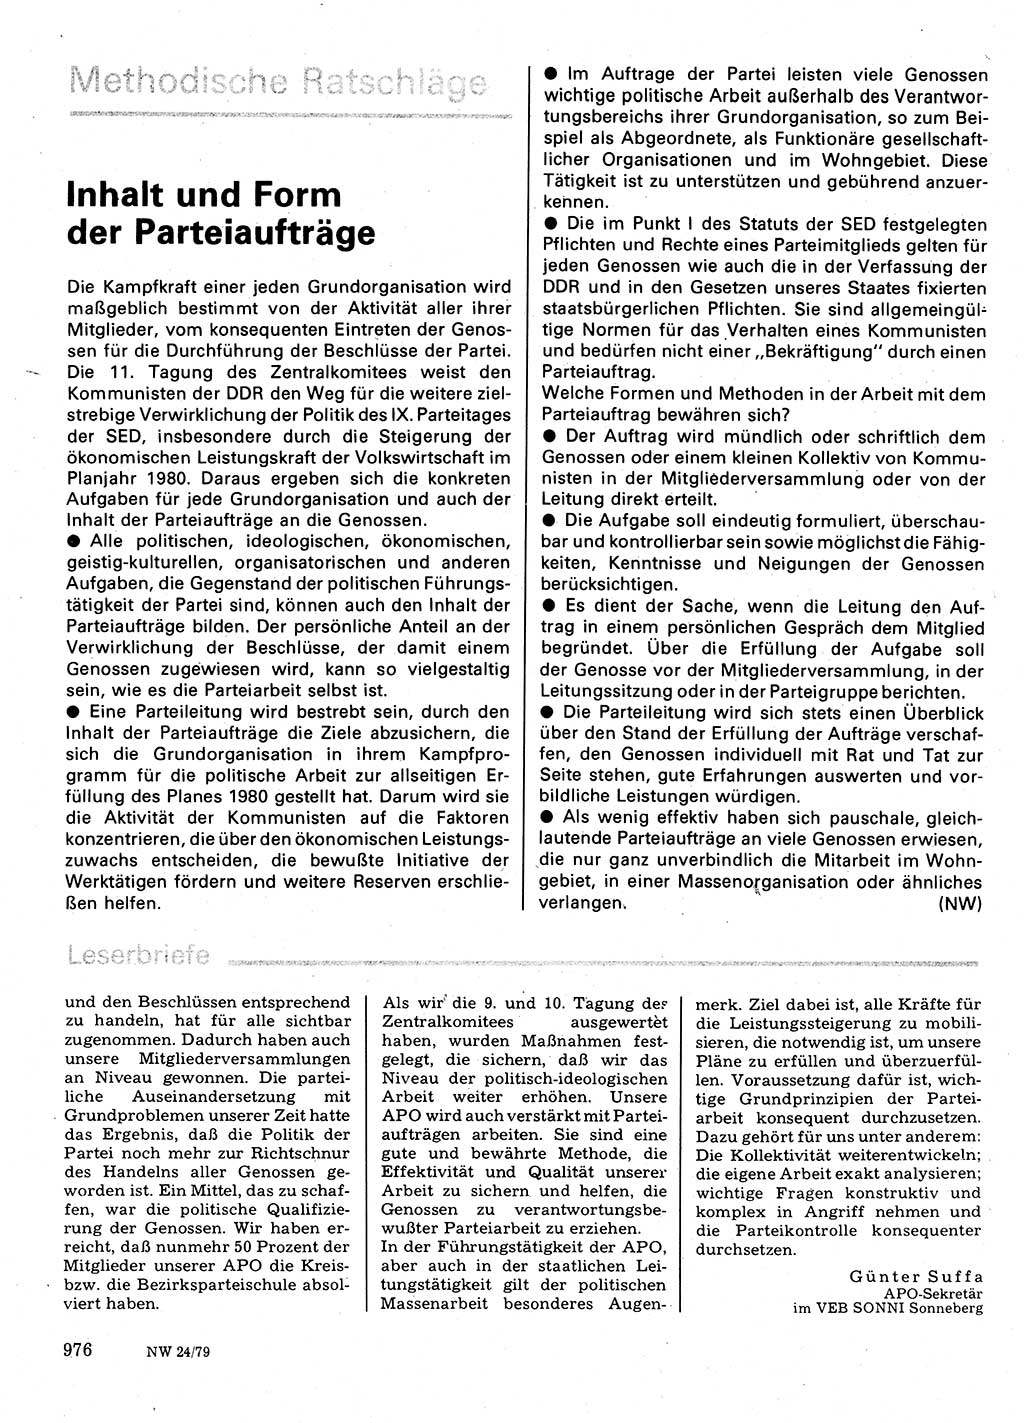 Neuer Weg (NW), Organ des Zentralkomitees (ZK) der SED (Sozialistische Einheitspartei Deutschlands) für Fragen des Parteilebens, 34. Jahrgang [Deutsche Demokratische Republik (DDR)] 1979, Seite 976 (NW ZK SED DDR 1979, S. 976)